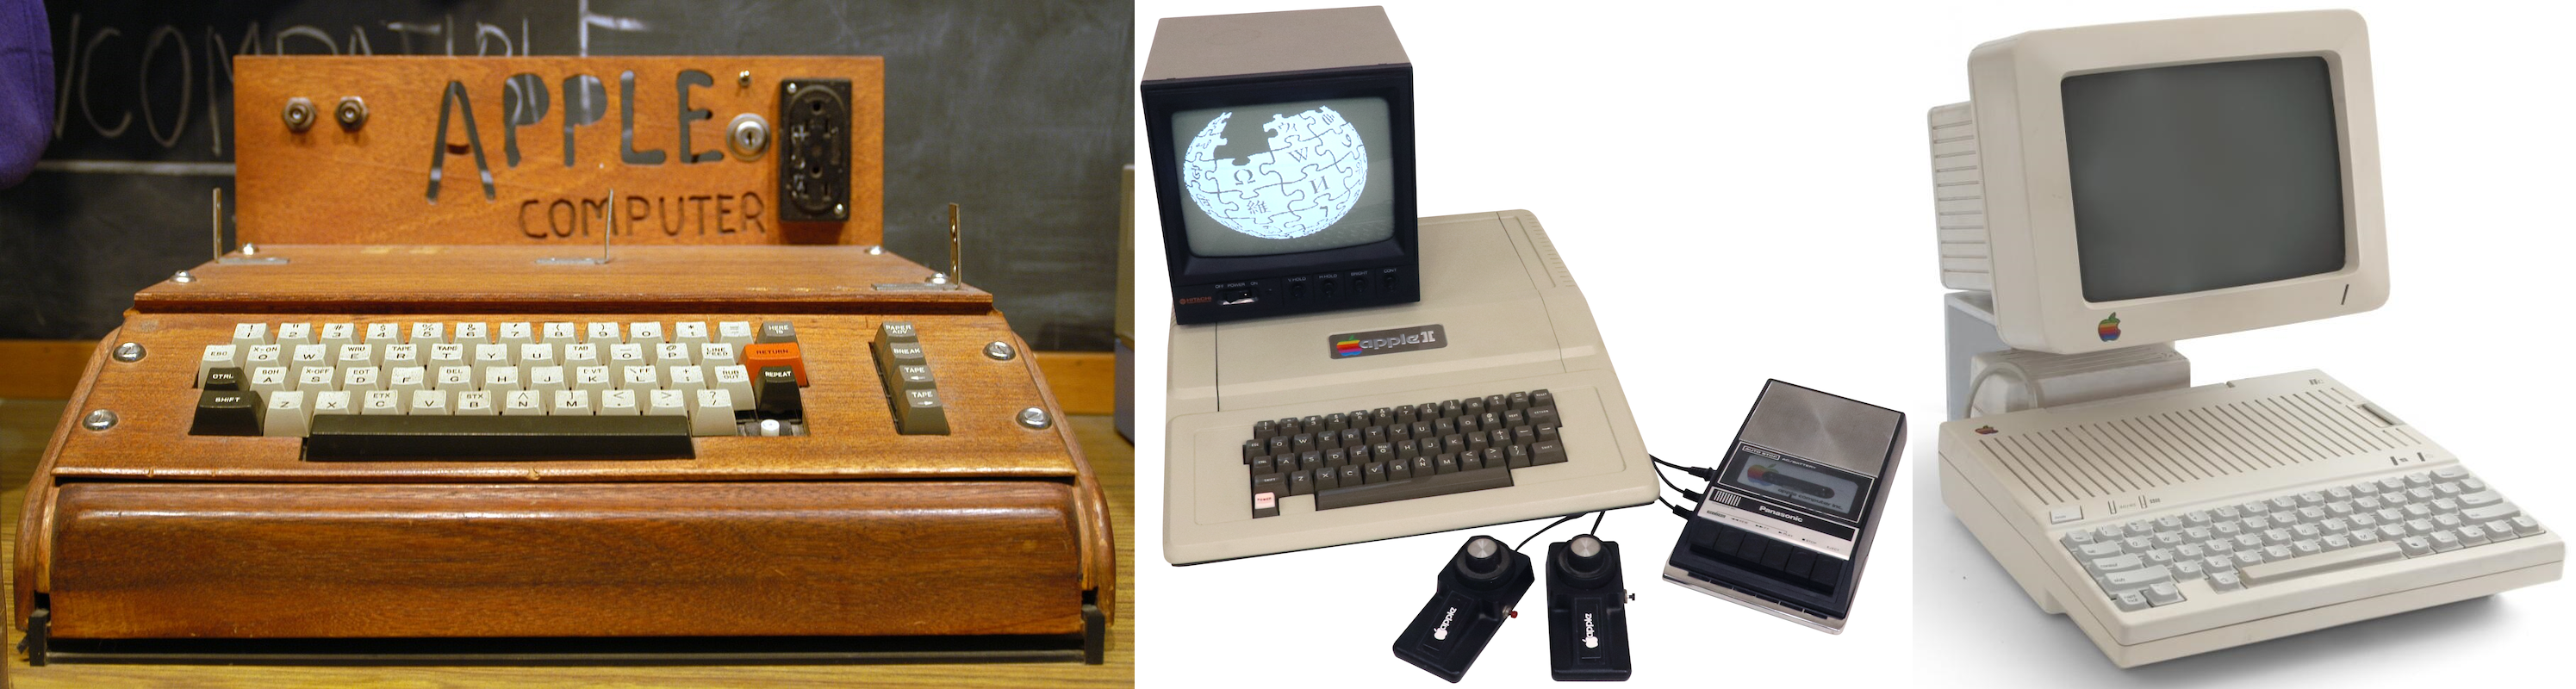 Лично на мой вкус начиная с Apple IIc дизайн этих компьютеров становится весьма интересным, это как отражение инженерных решений. Посмотрите ниже на BBC Micro и Master и на IIc справа - что вы захотели бы видеть на своем столе? Встроенный дисковод на 3.5" в 1984 году (я с 5.25" основательно перешел на 3.5" в 1999 году, у меня просто 5.25" дискет было штук 400 и по качеству они настолько хороши, что работают и сейчас, а вот дискеты на 3.5" в 1999 году уже хромали на обе ноги)